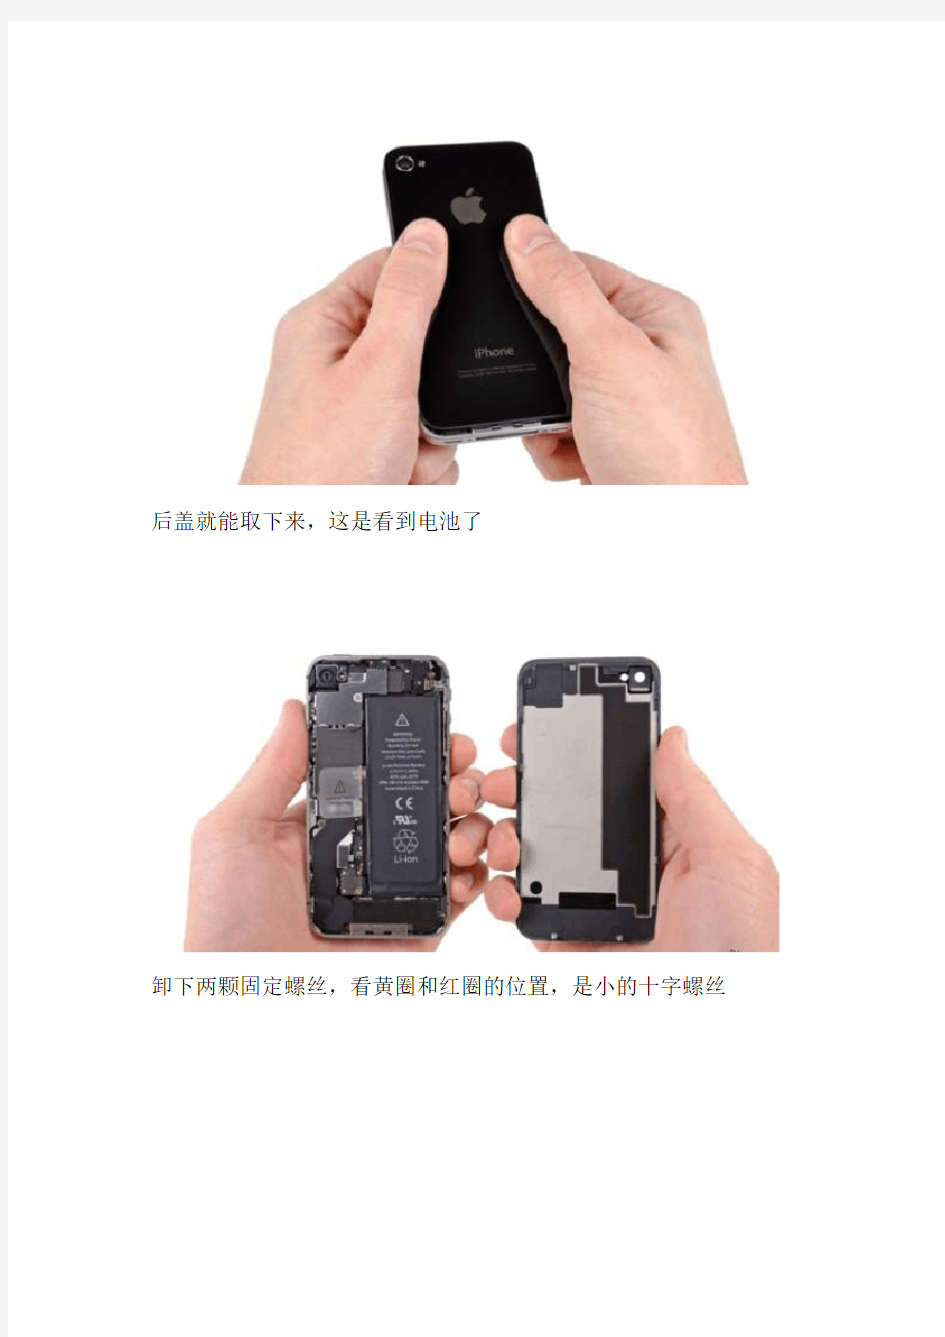 iPhone4S换电池教程